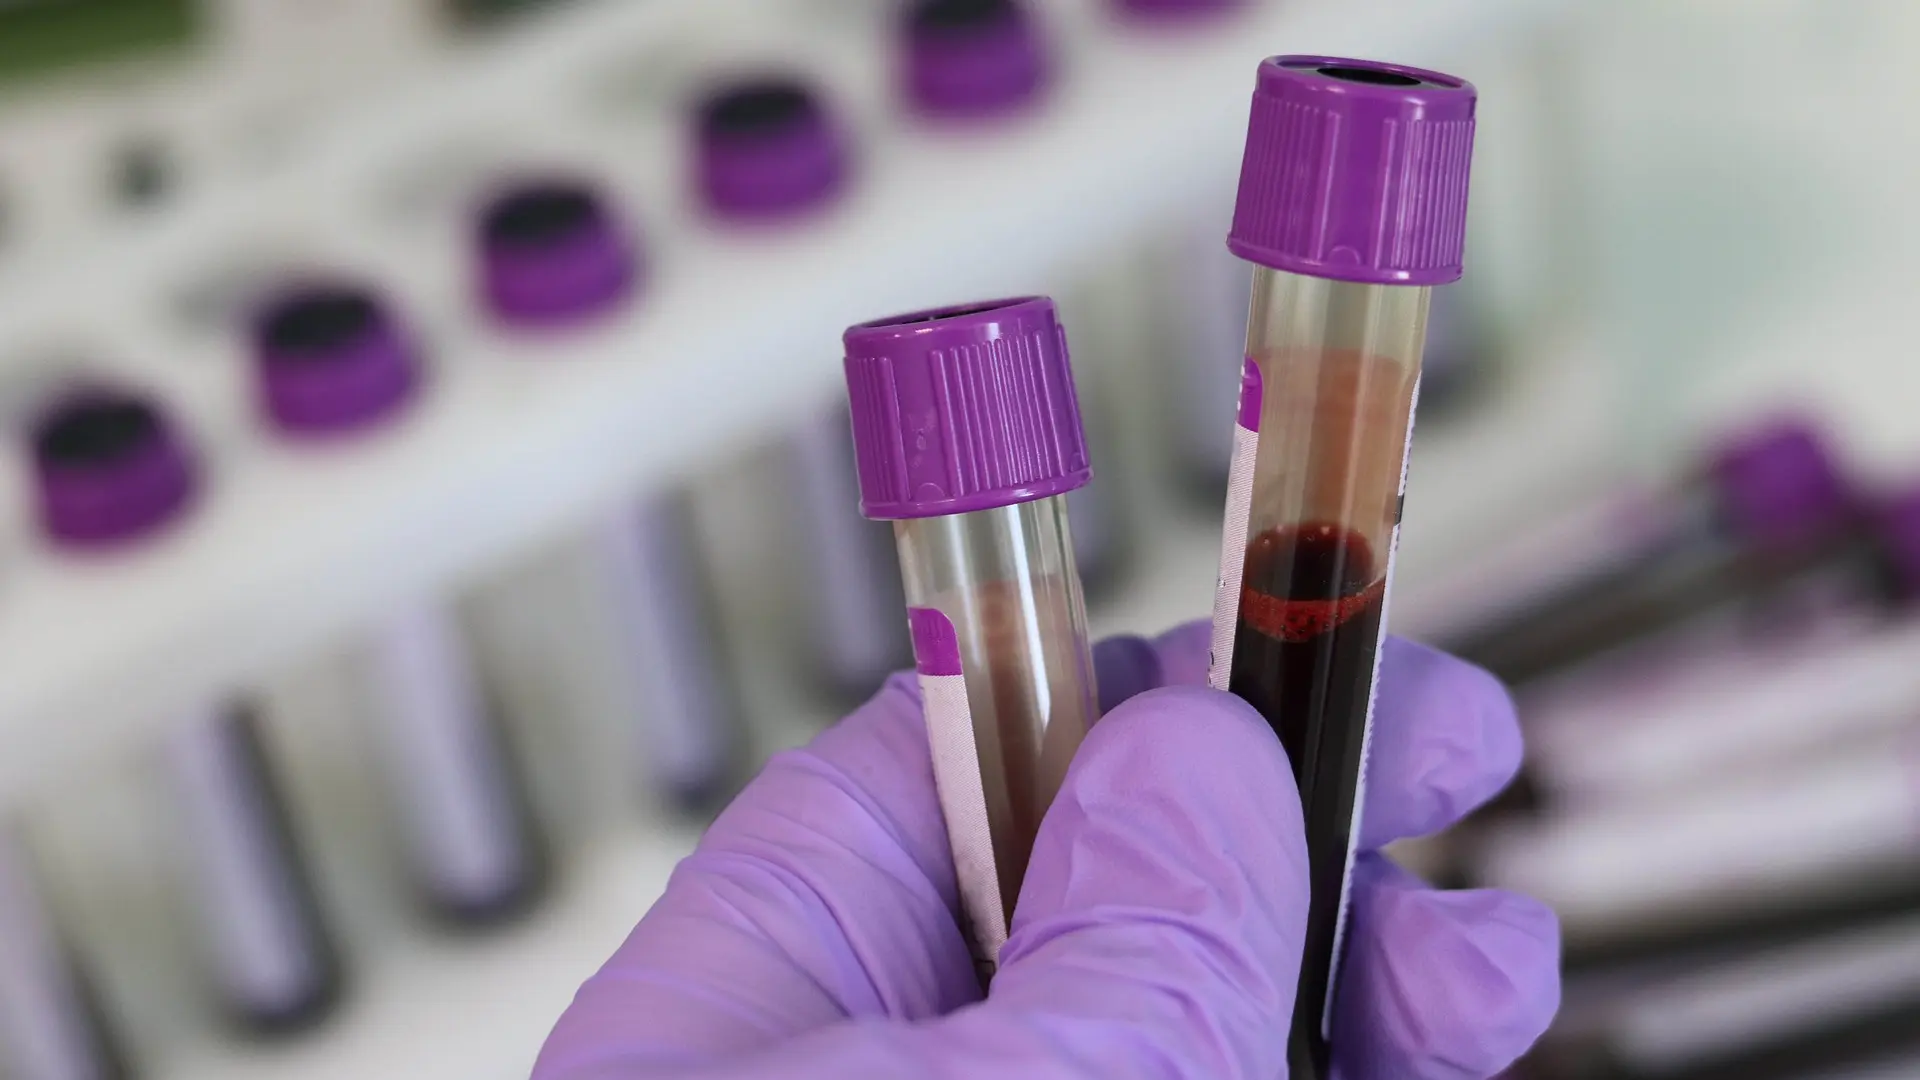 vađenje krvi laboratorija pixabay-6419acc2e6543.webp